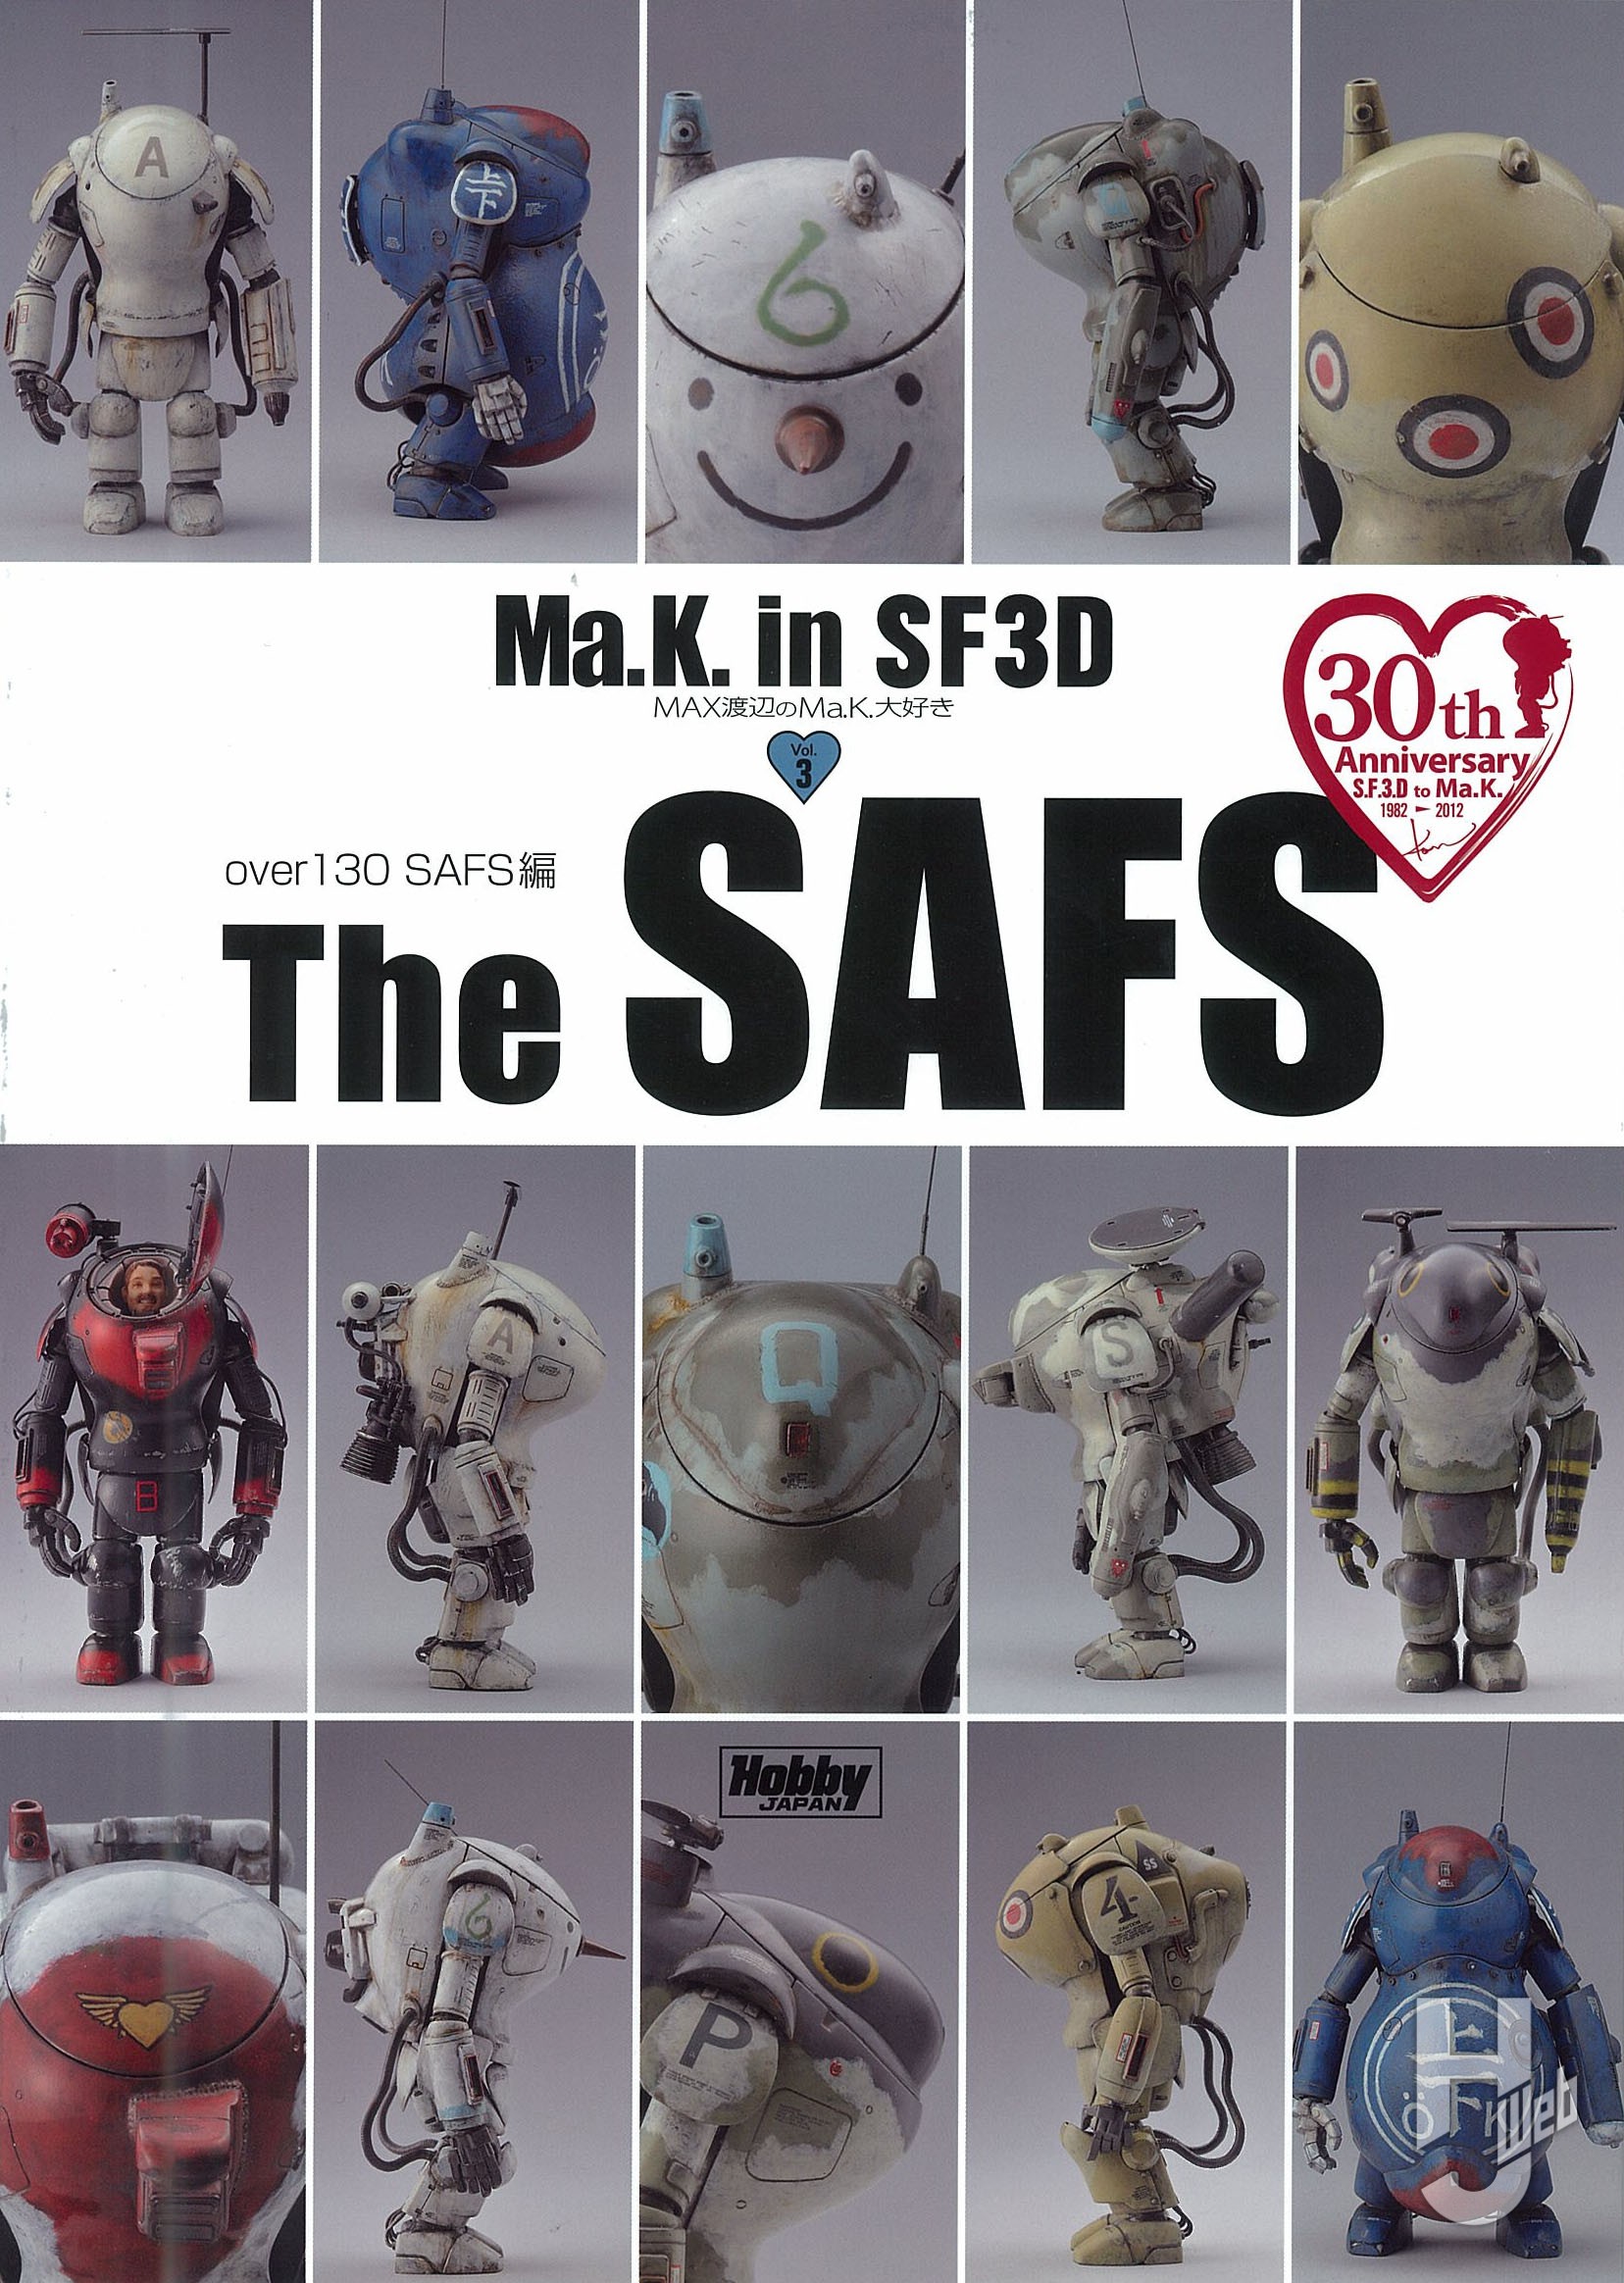 Ma.K. in SF3D MAX渡辺のMa.K.大好き Vol.3 – Hobby JAPAN Web